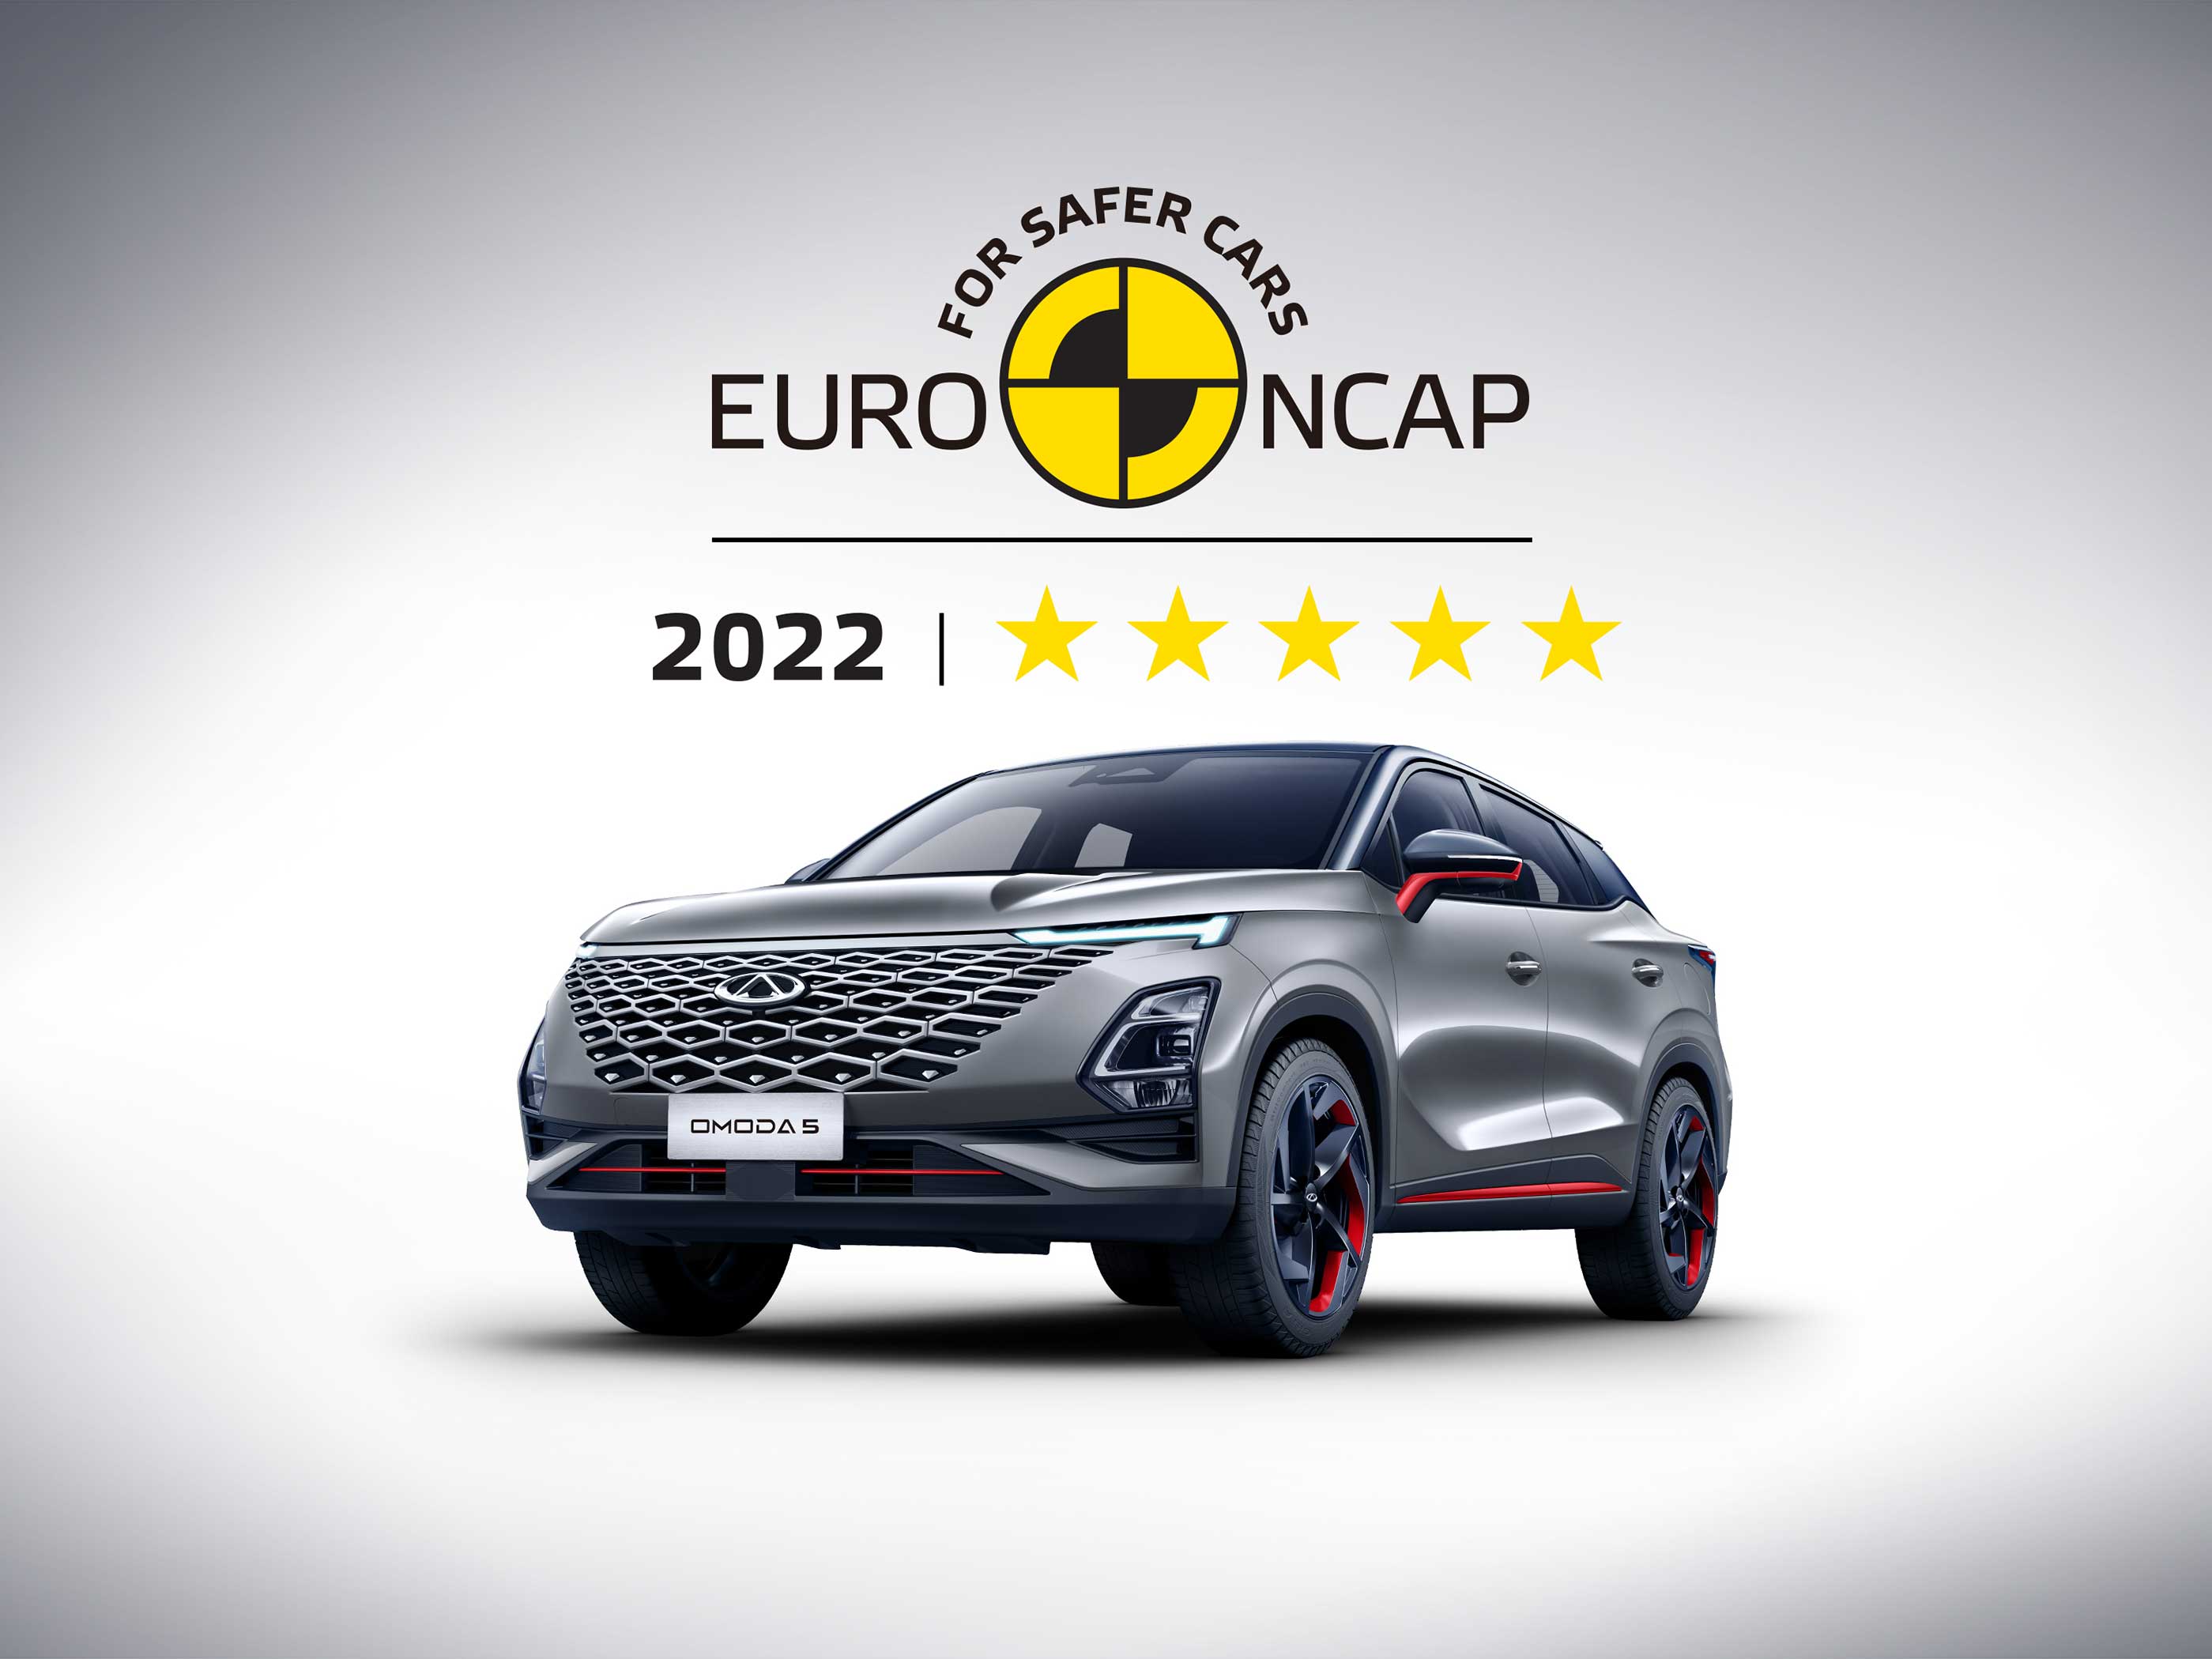 OMODA 5 obtiene una calificación de cinco estrellas por Euro NCAP, resaltando su excelente calidad de seguridad'